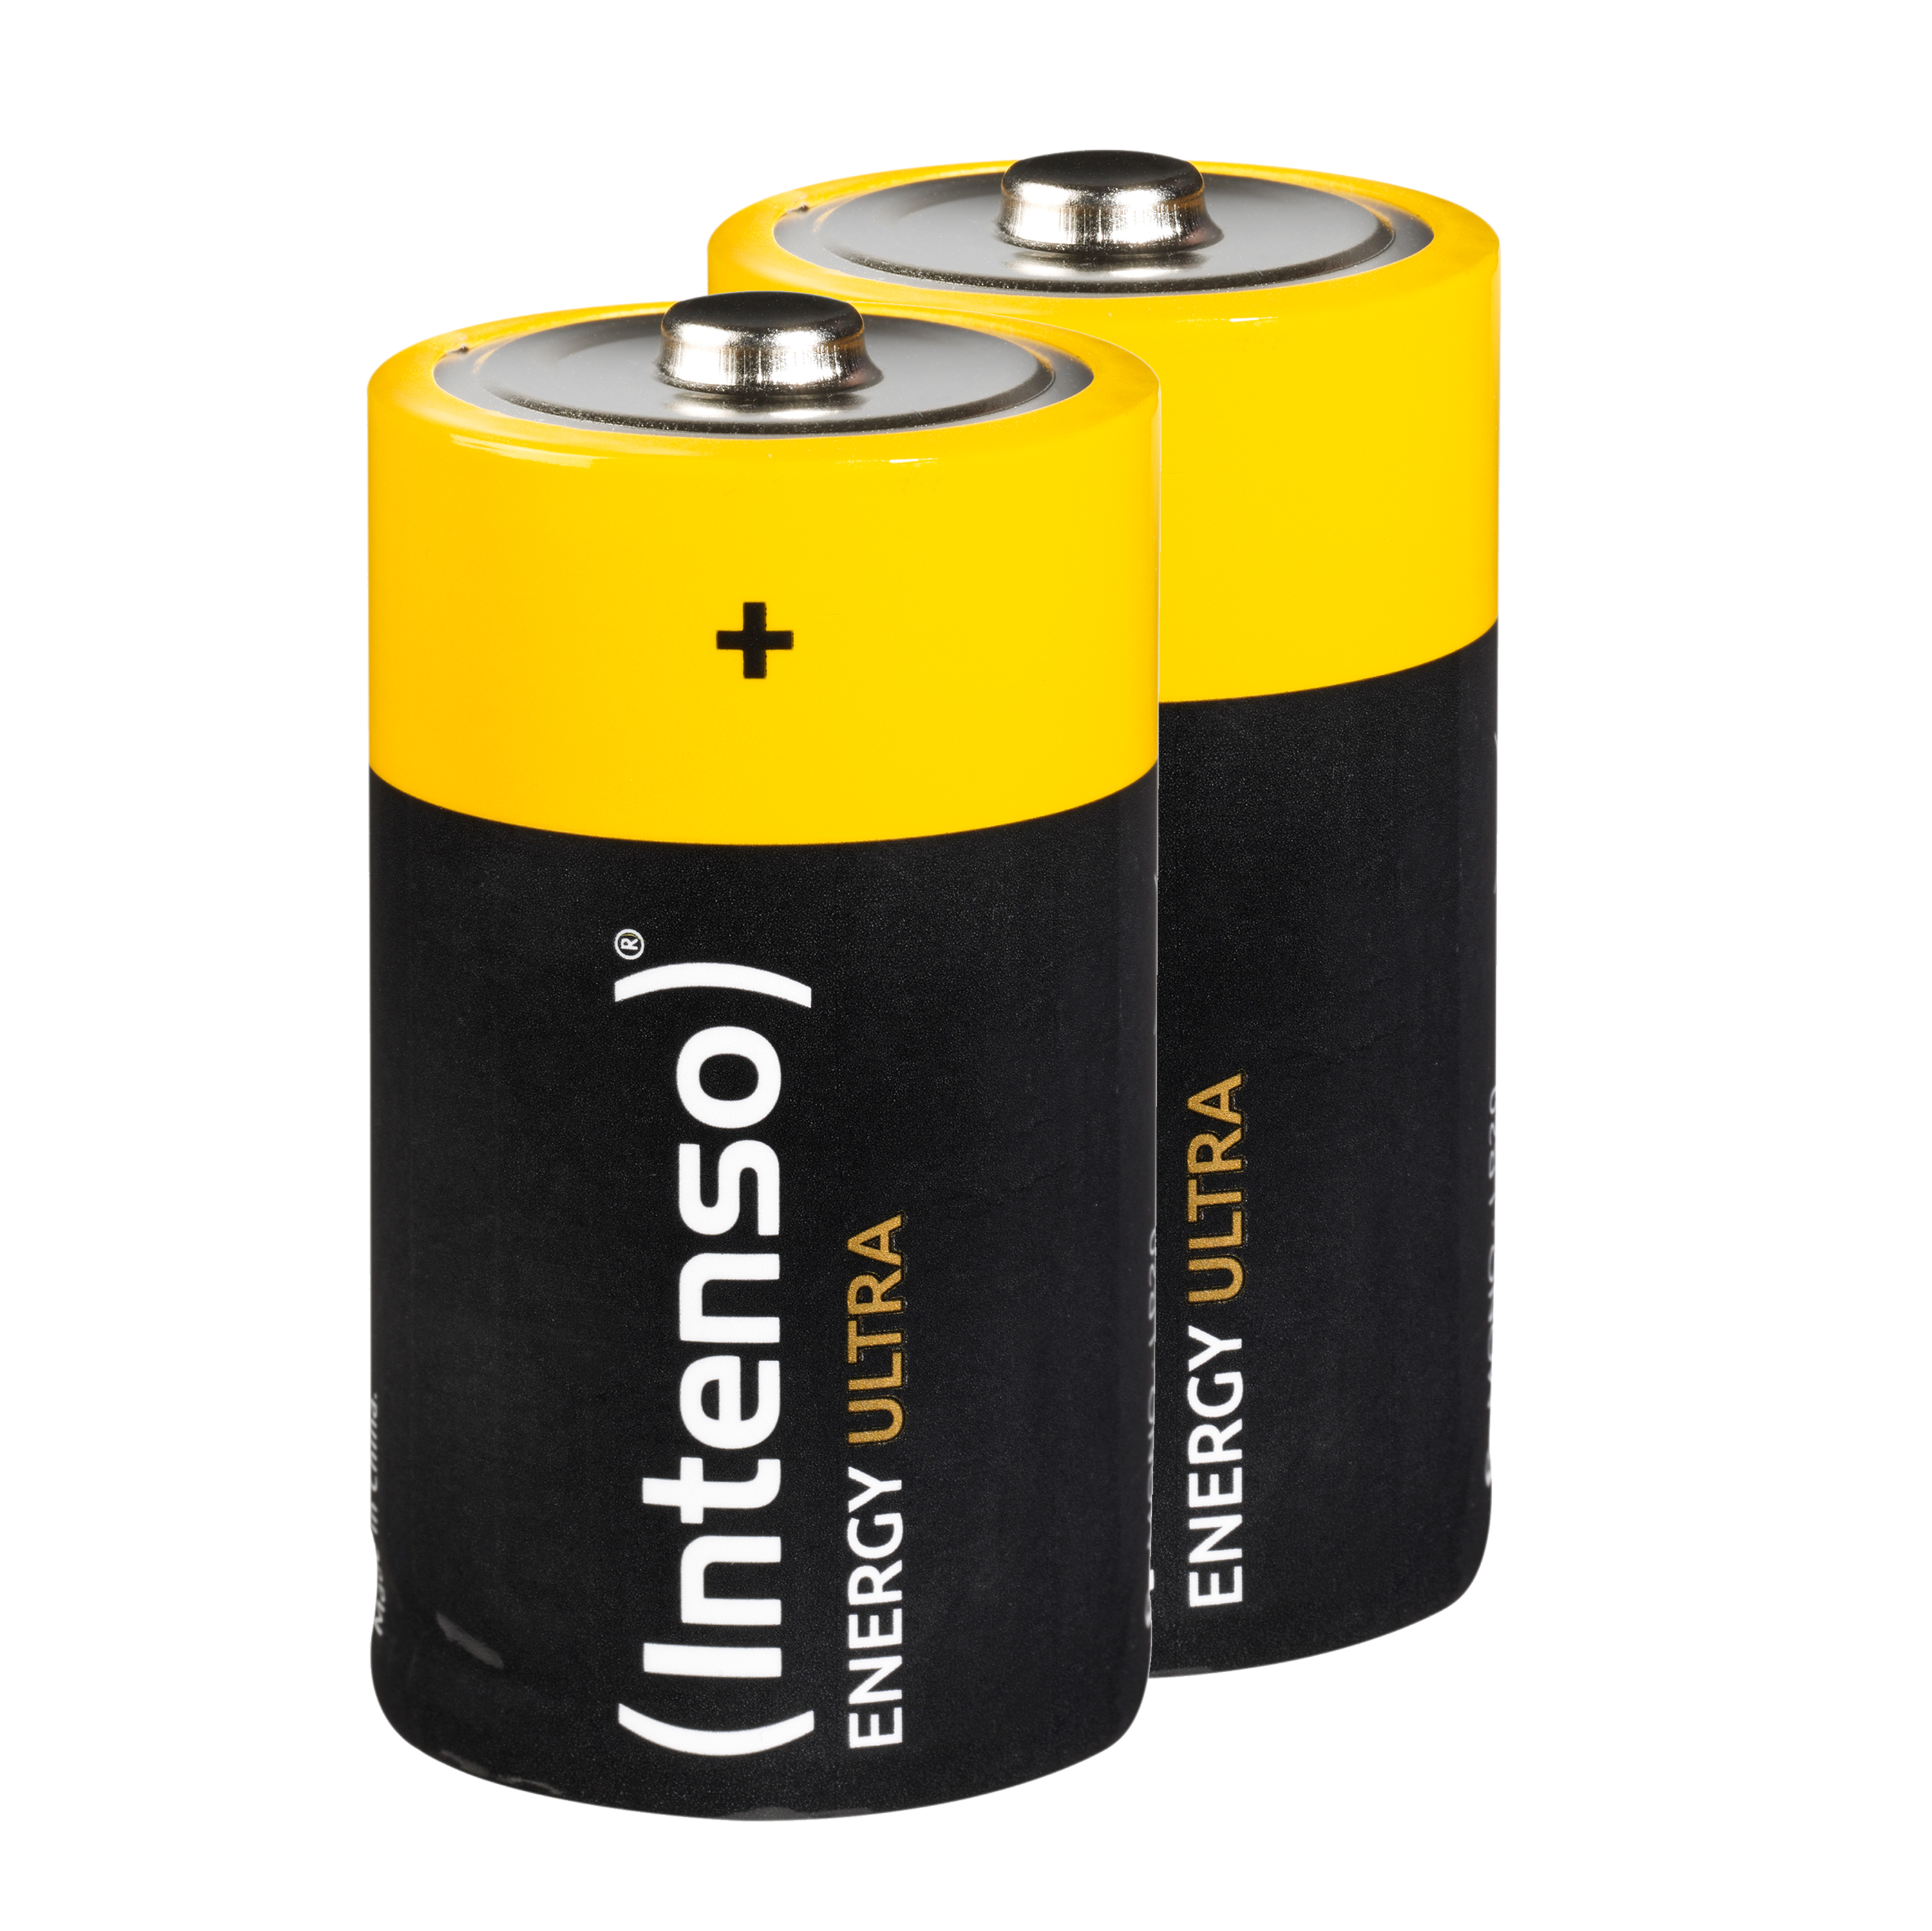 INTENSO Energy 2er D LR20 LR20, Ultra Batterie Alkaline D, Pack Mono (Quecksilberfrei), Manganese